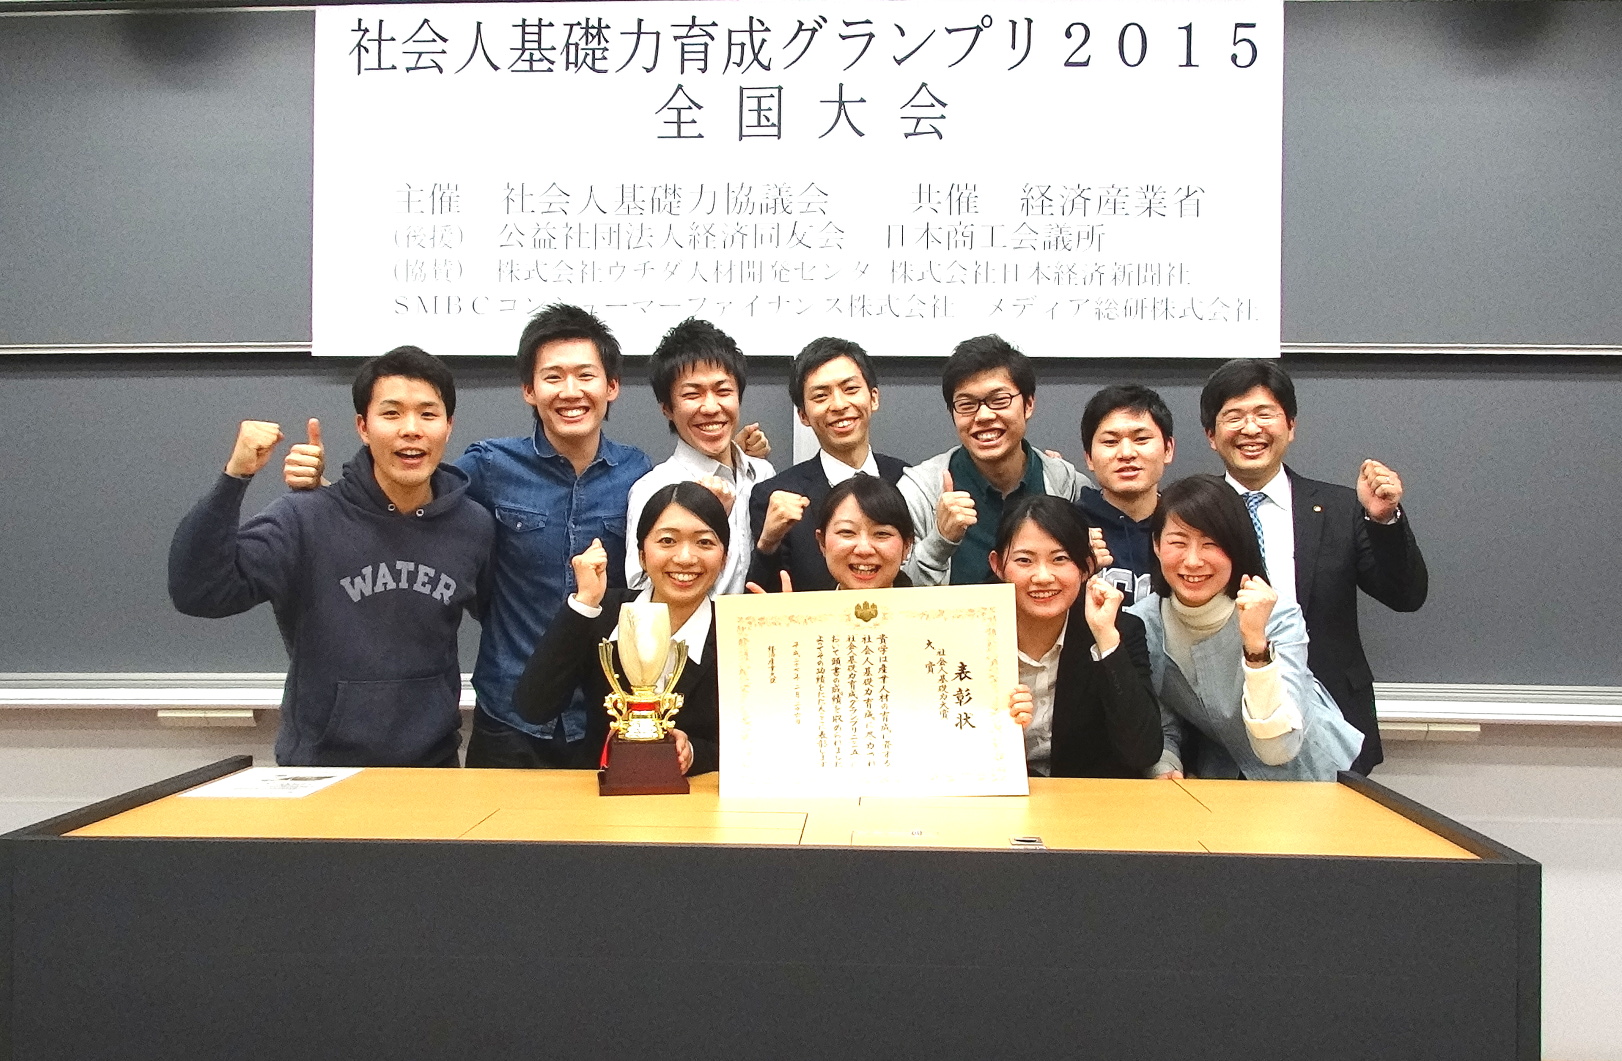 創価大学が「社会人基礎力育成グランプリ2015」で大賞（経済産業大臣賞）を受賞